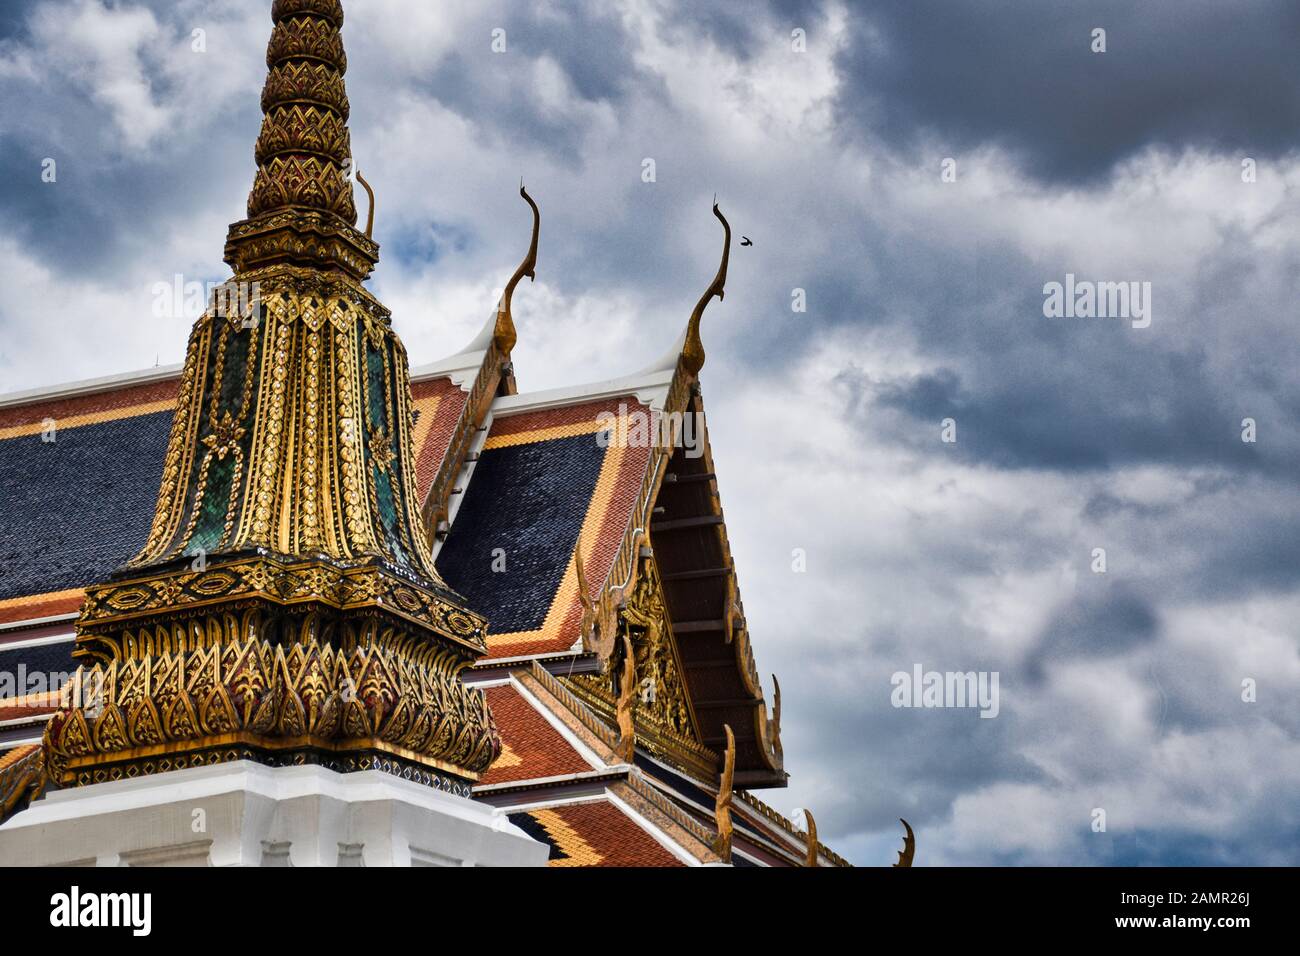 Merkmale der traditionellen thailändischen Architektur, die von Künstlern geschaffen wurde, die ihre Vorstellungskraft in die Wirklichkeit verwandeln. Detaillierte, goldene, steil abfallende Ziegeldächer, Stockfoto